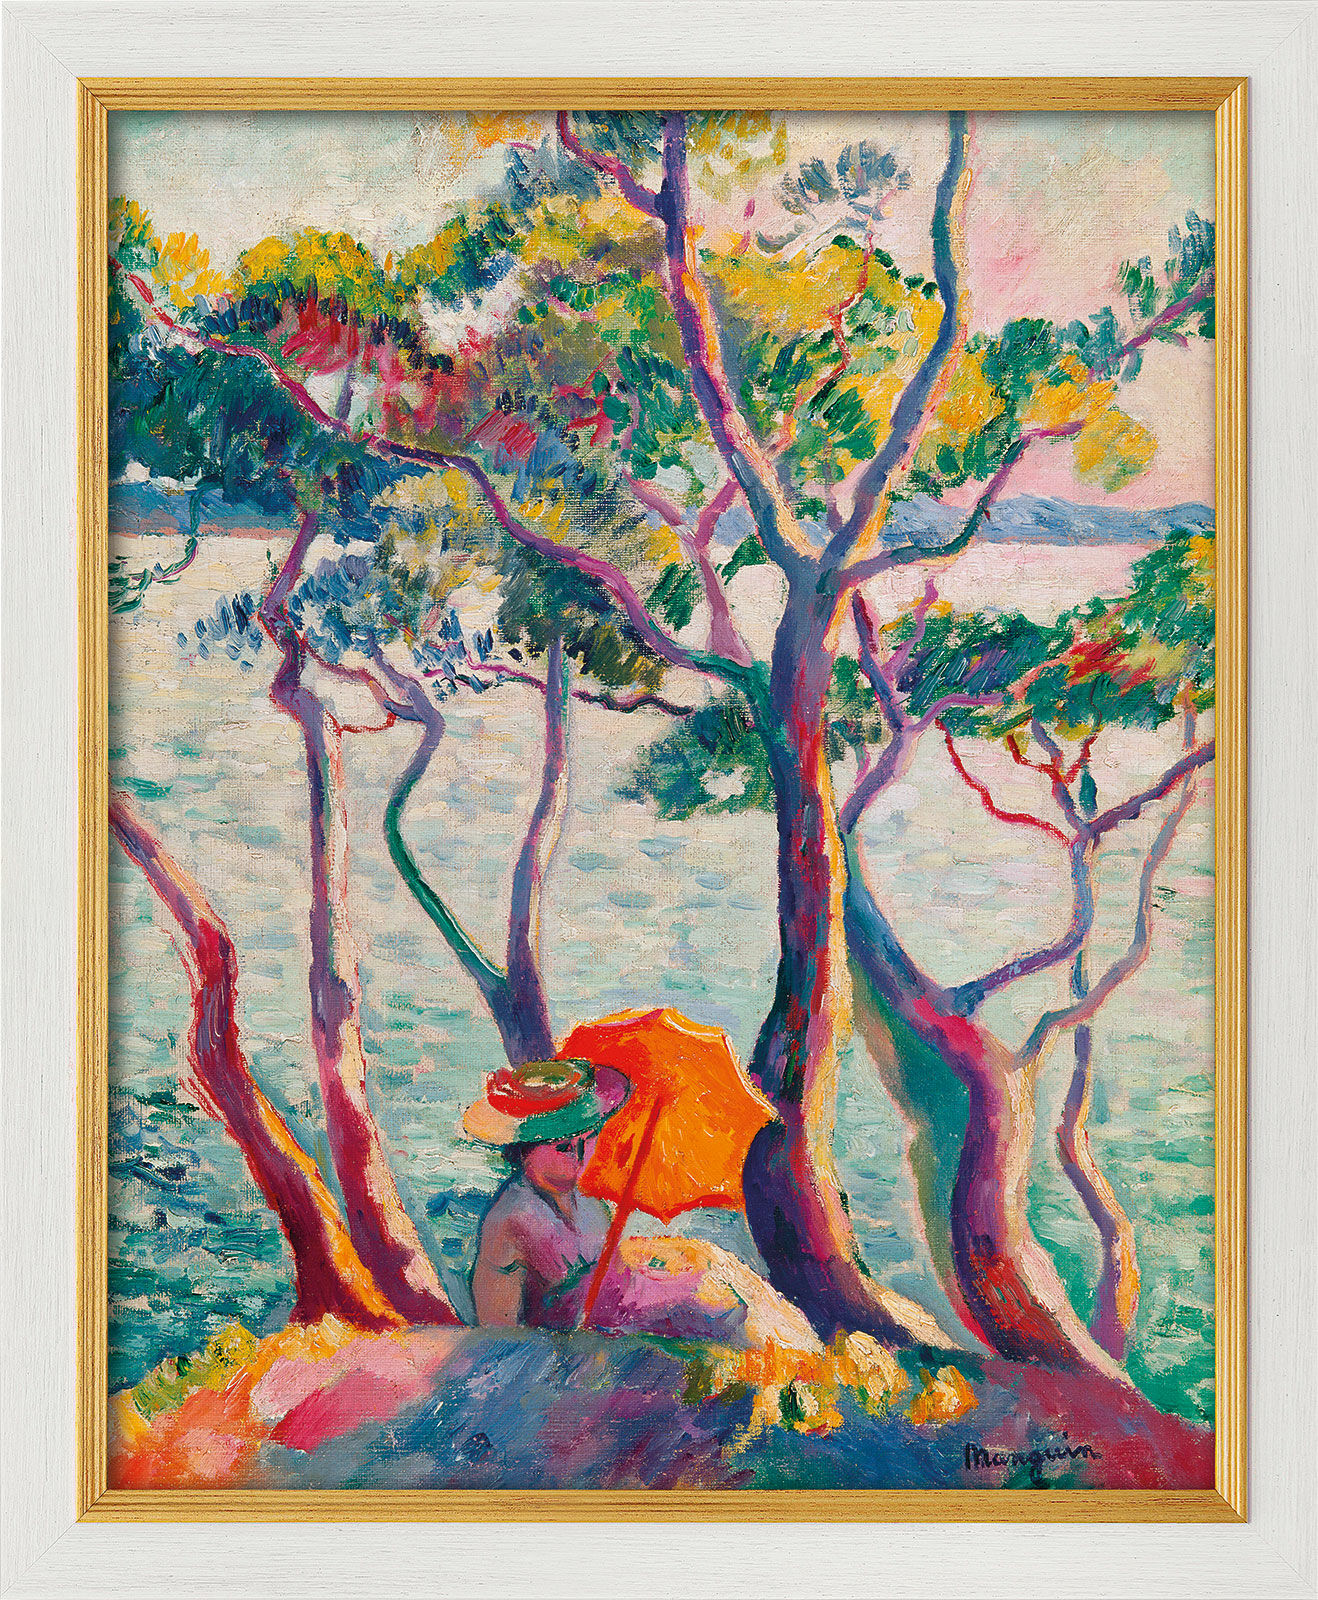 Billede "Jeanne à l'ombrelle, Cavalière" (1905/1906), hvid og gylden indrammet version von Henri Manguin